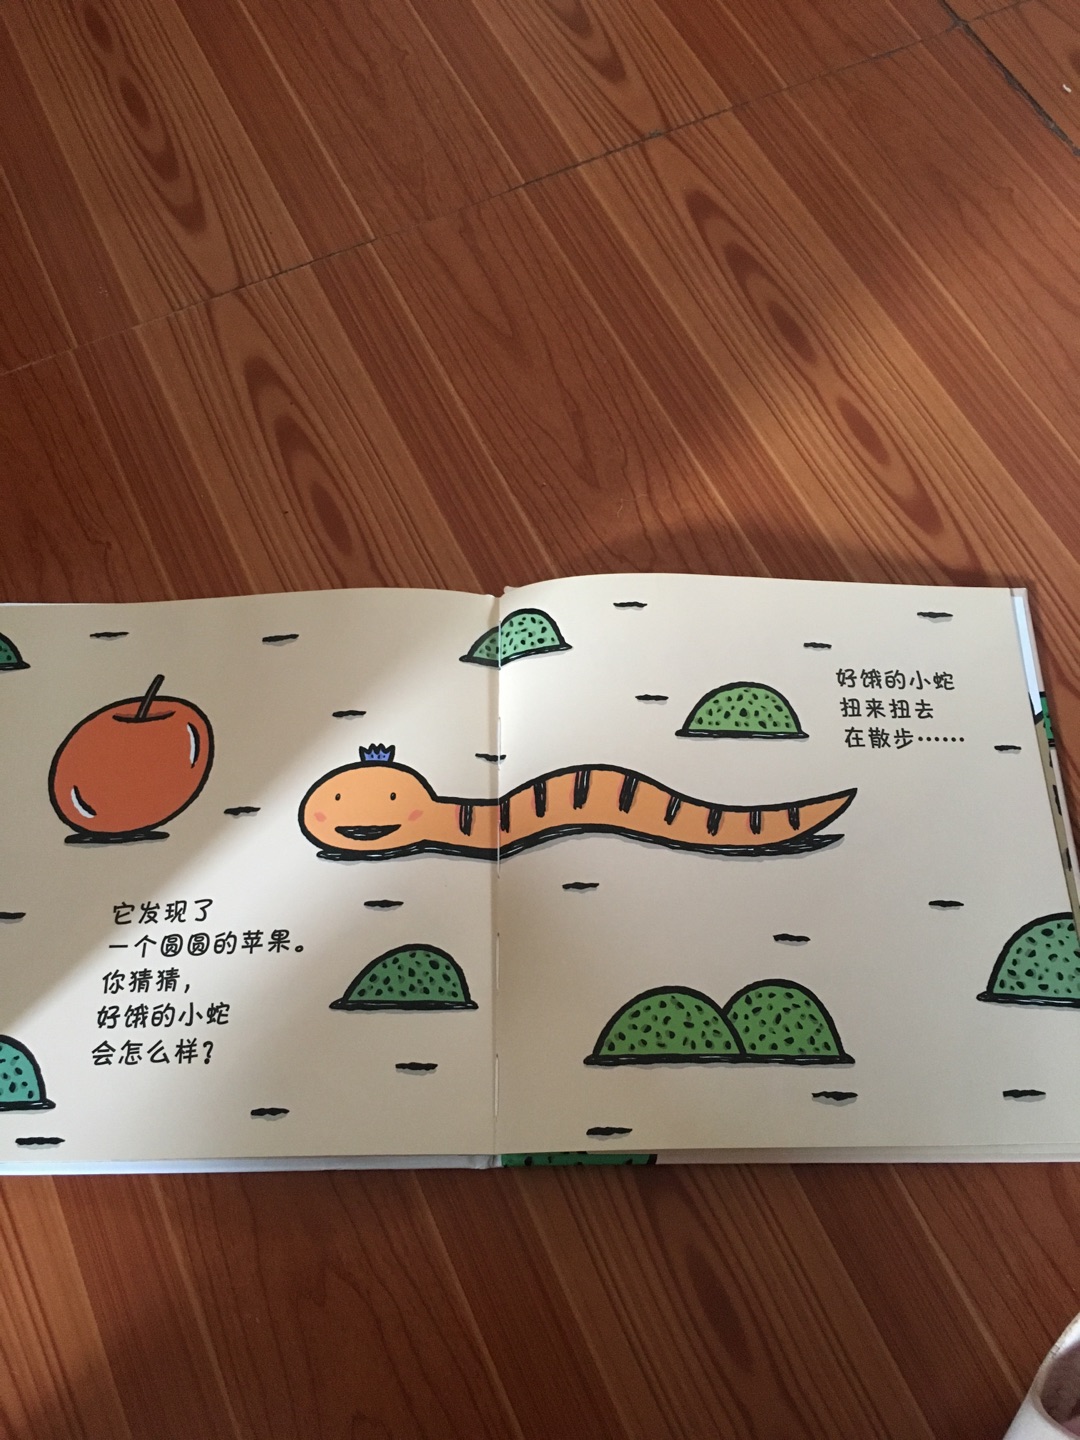 好饿好饿的小蛇，很有意思呢，通过这本书，宝宝可以直到最常见的形状和颜色，我家宝宝三岁了，觉得很有意思！！！